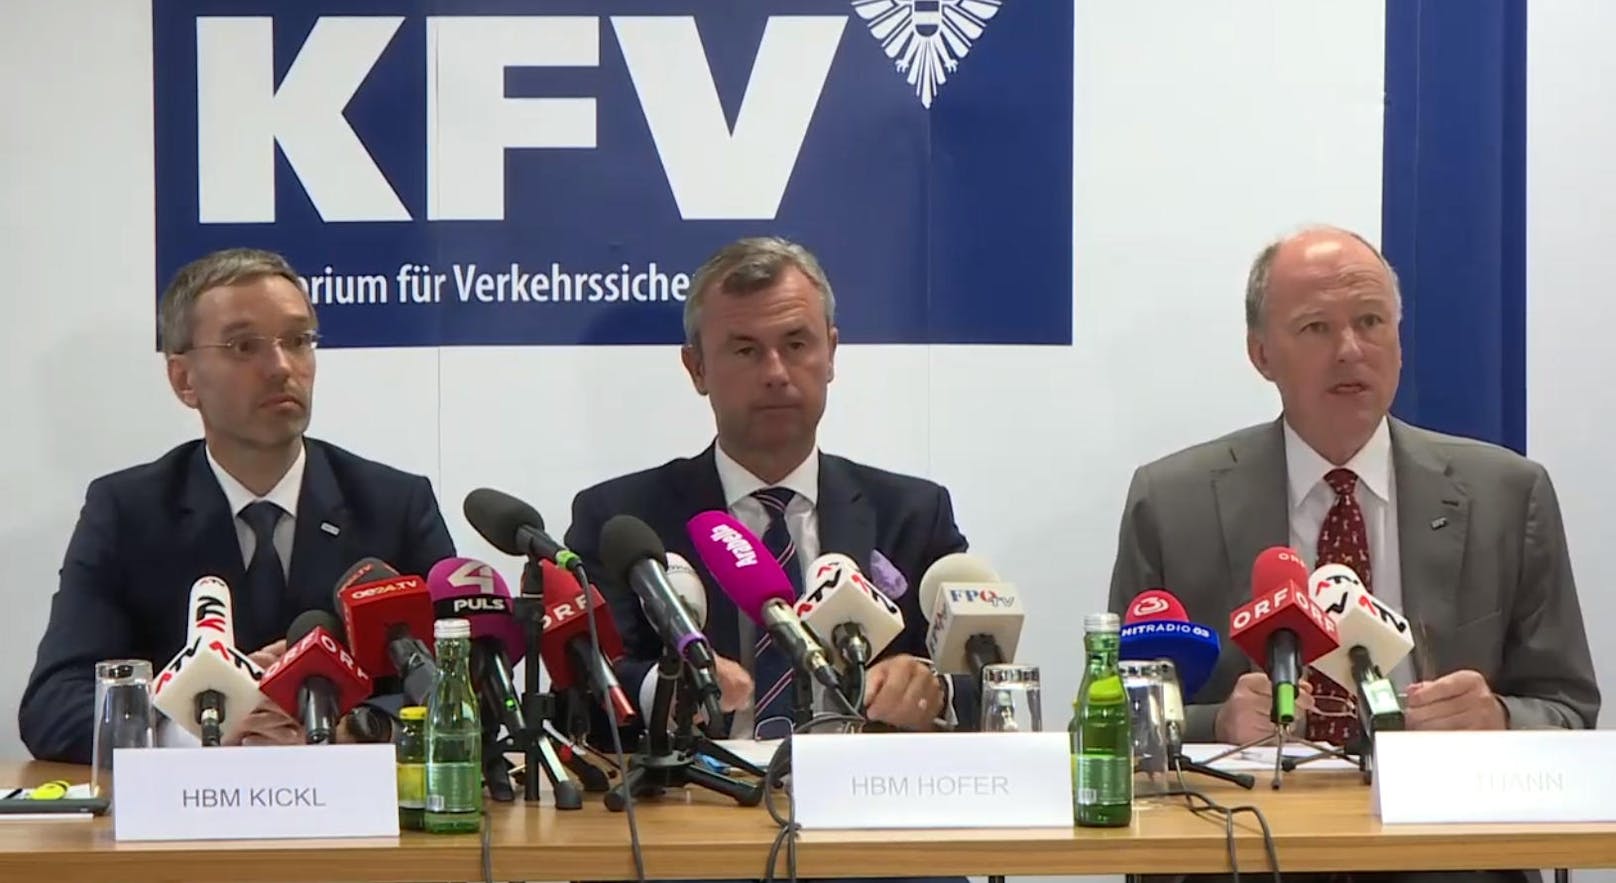 Herbert Kickl, Norbert Hofer und Orhmar Thann geben eine gemeinsame Pressekonferenz zu Drogenlenkern im Straßenverkehr.